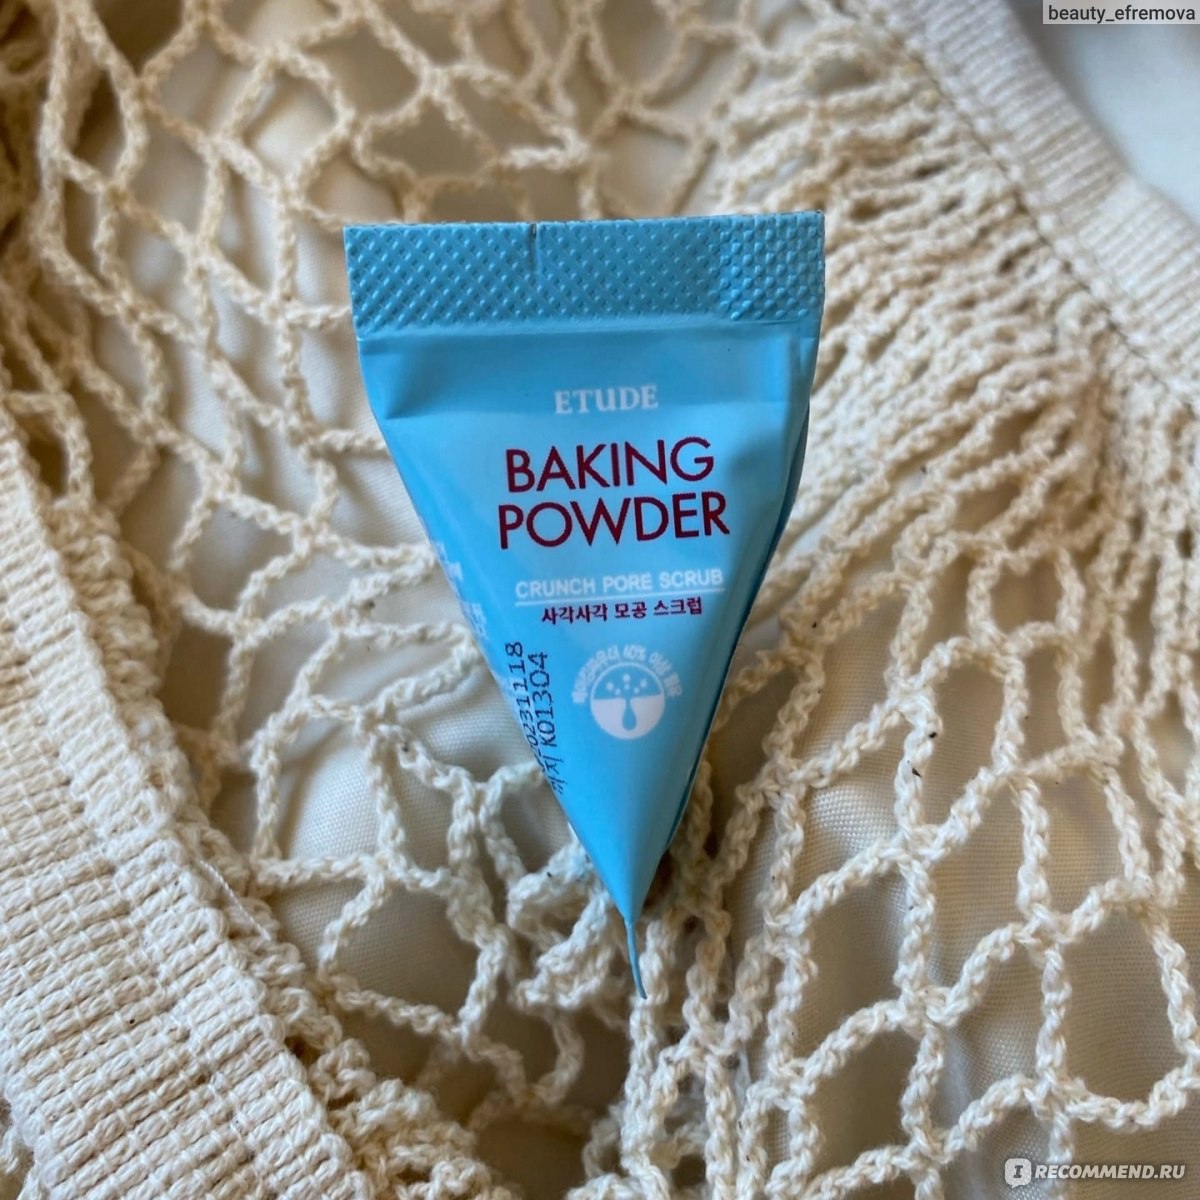 Baking powder скраб применение. Baking Powder скраб. Baking Powder Pore Scrub лэтуаль. Как использовать Baking Powder для лица. Etude Baking Powder логотип производителя.